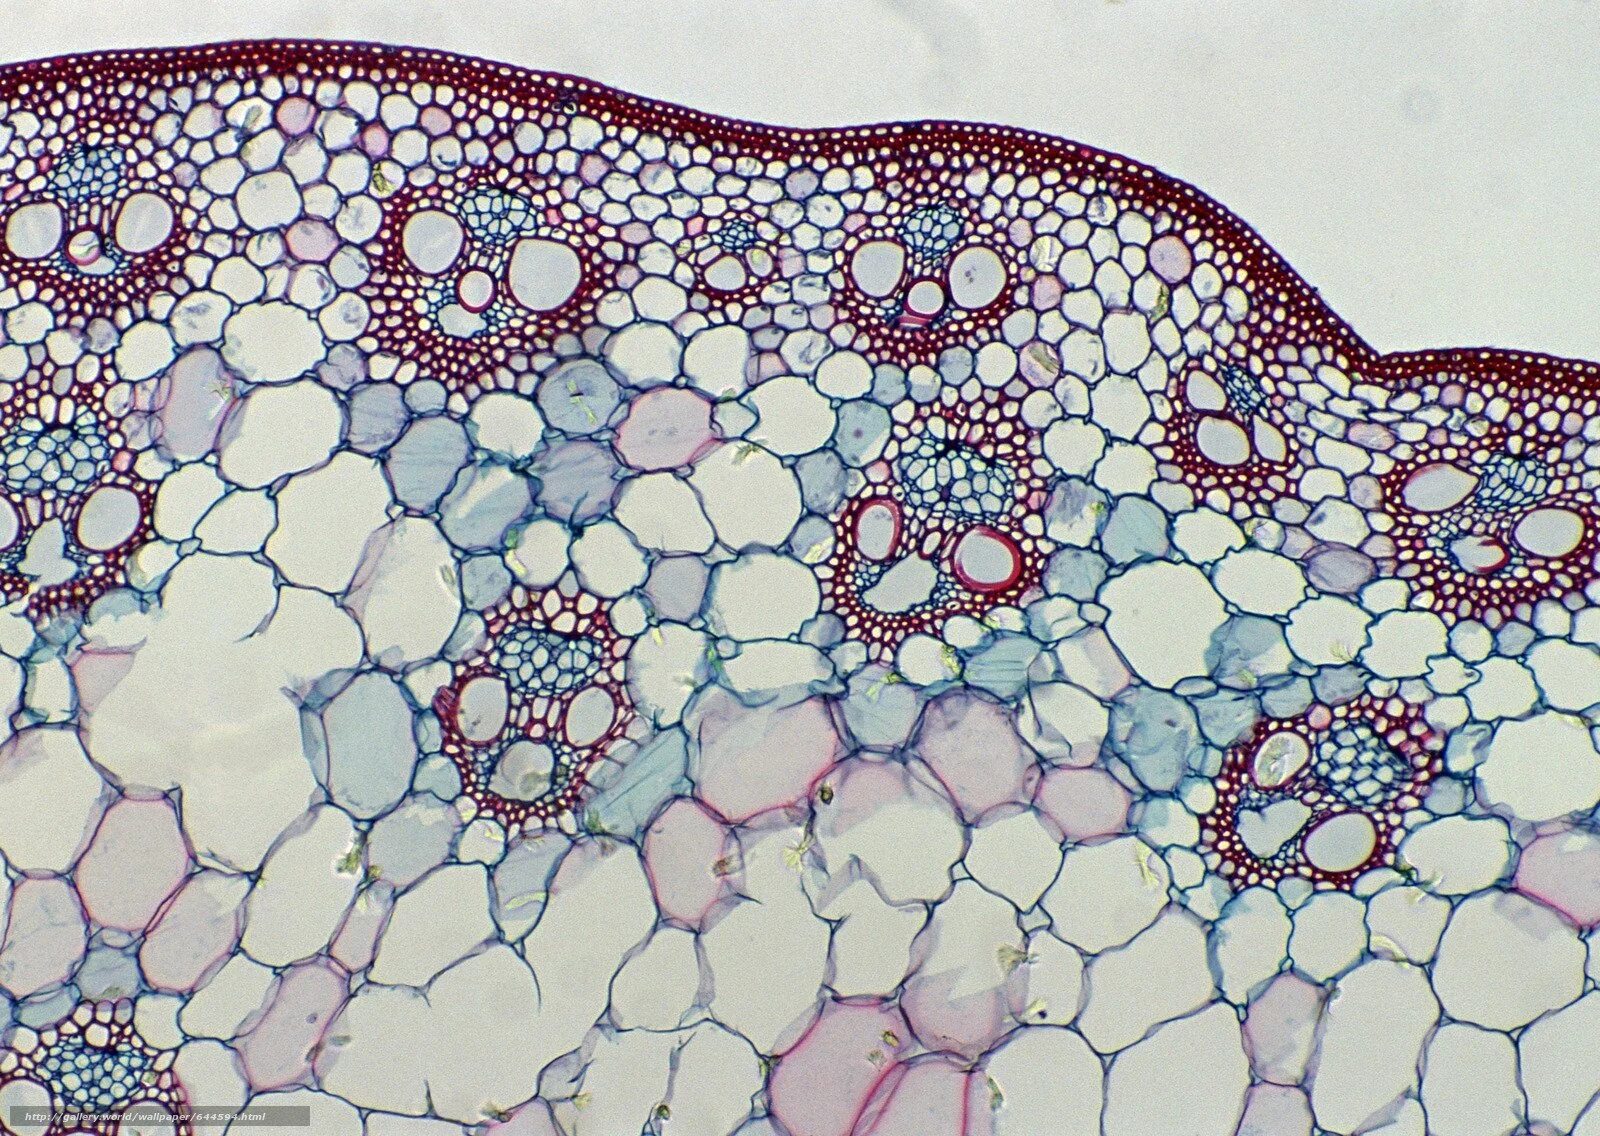 Строение живой ткани. Склеренхима под микроскопом. Ксилема микроскоп. Микроскопия клетки. Клетка в микроскопе.